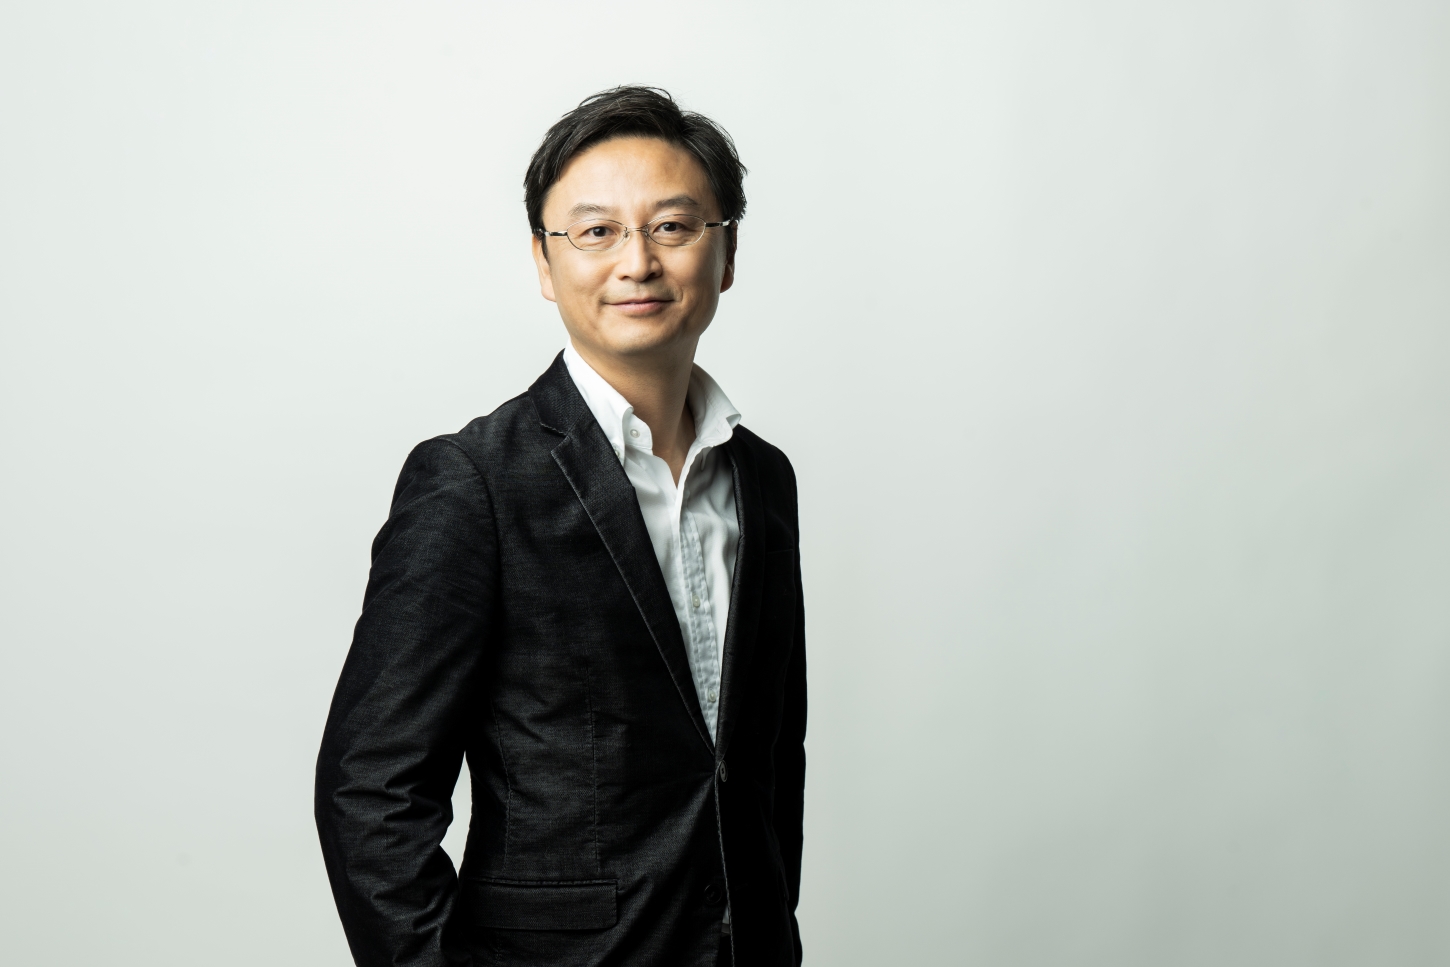 代表取締役　山本 清貴氏
自らが感じた管理者の課題を解決すべく、2016年に同社を設立。